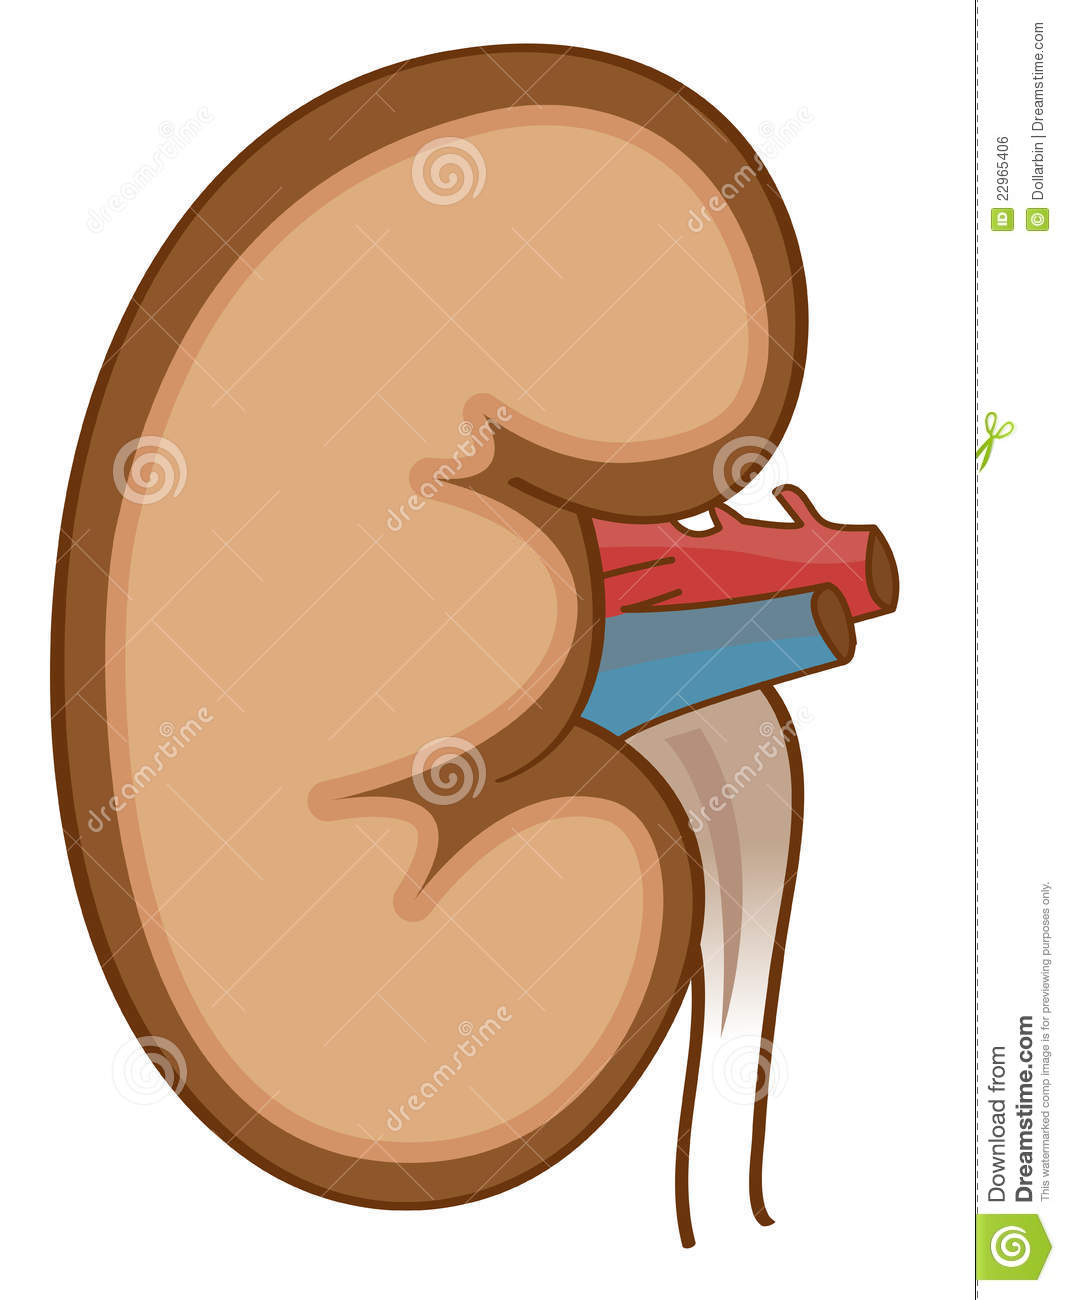 Kidney Clipart Kidney 22965406 Jpg